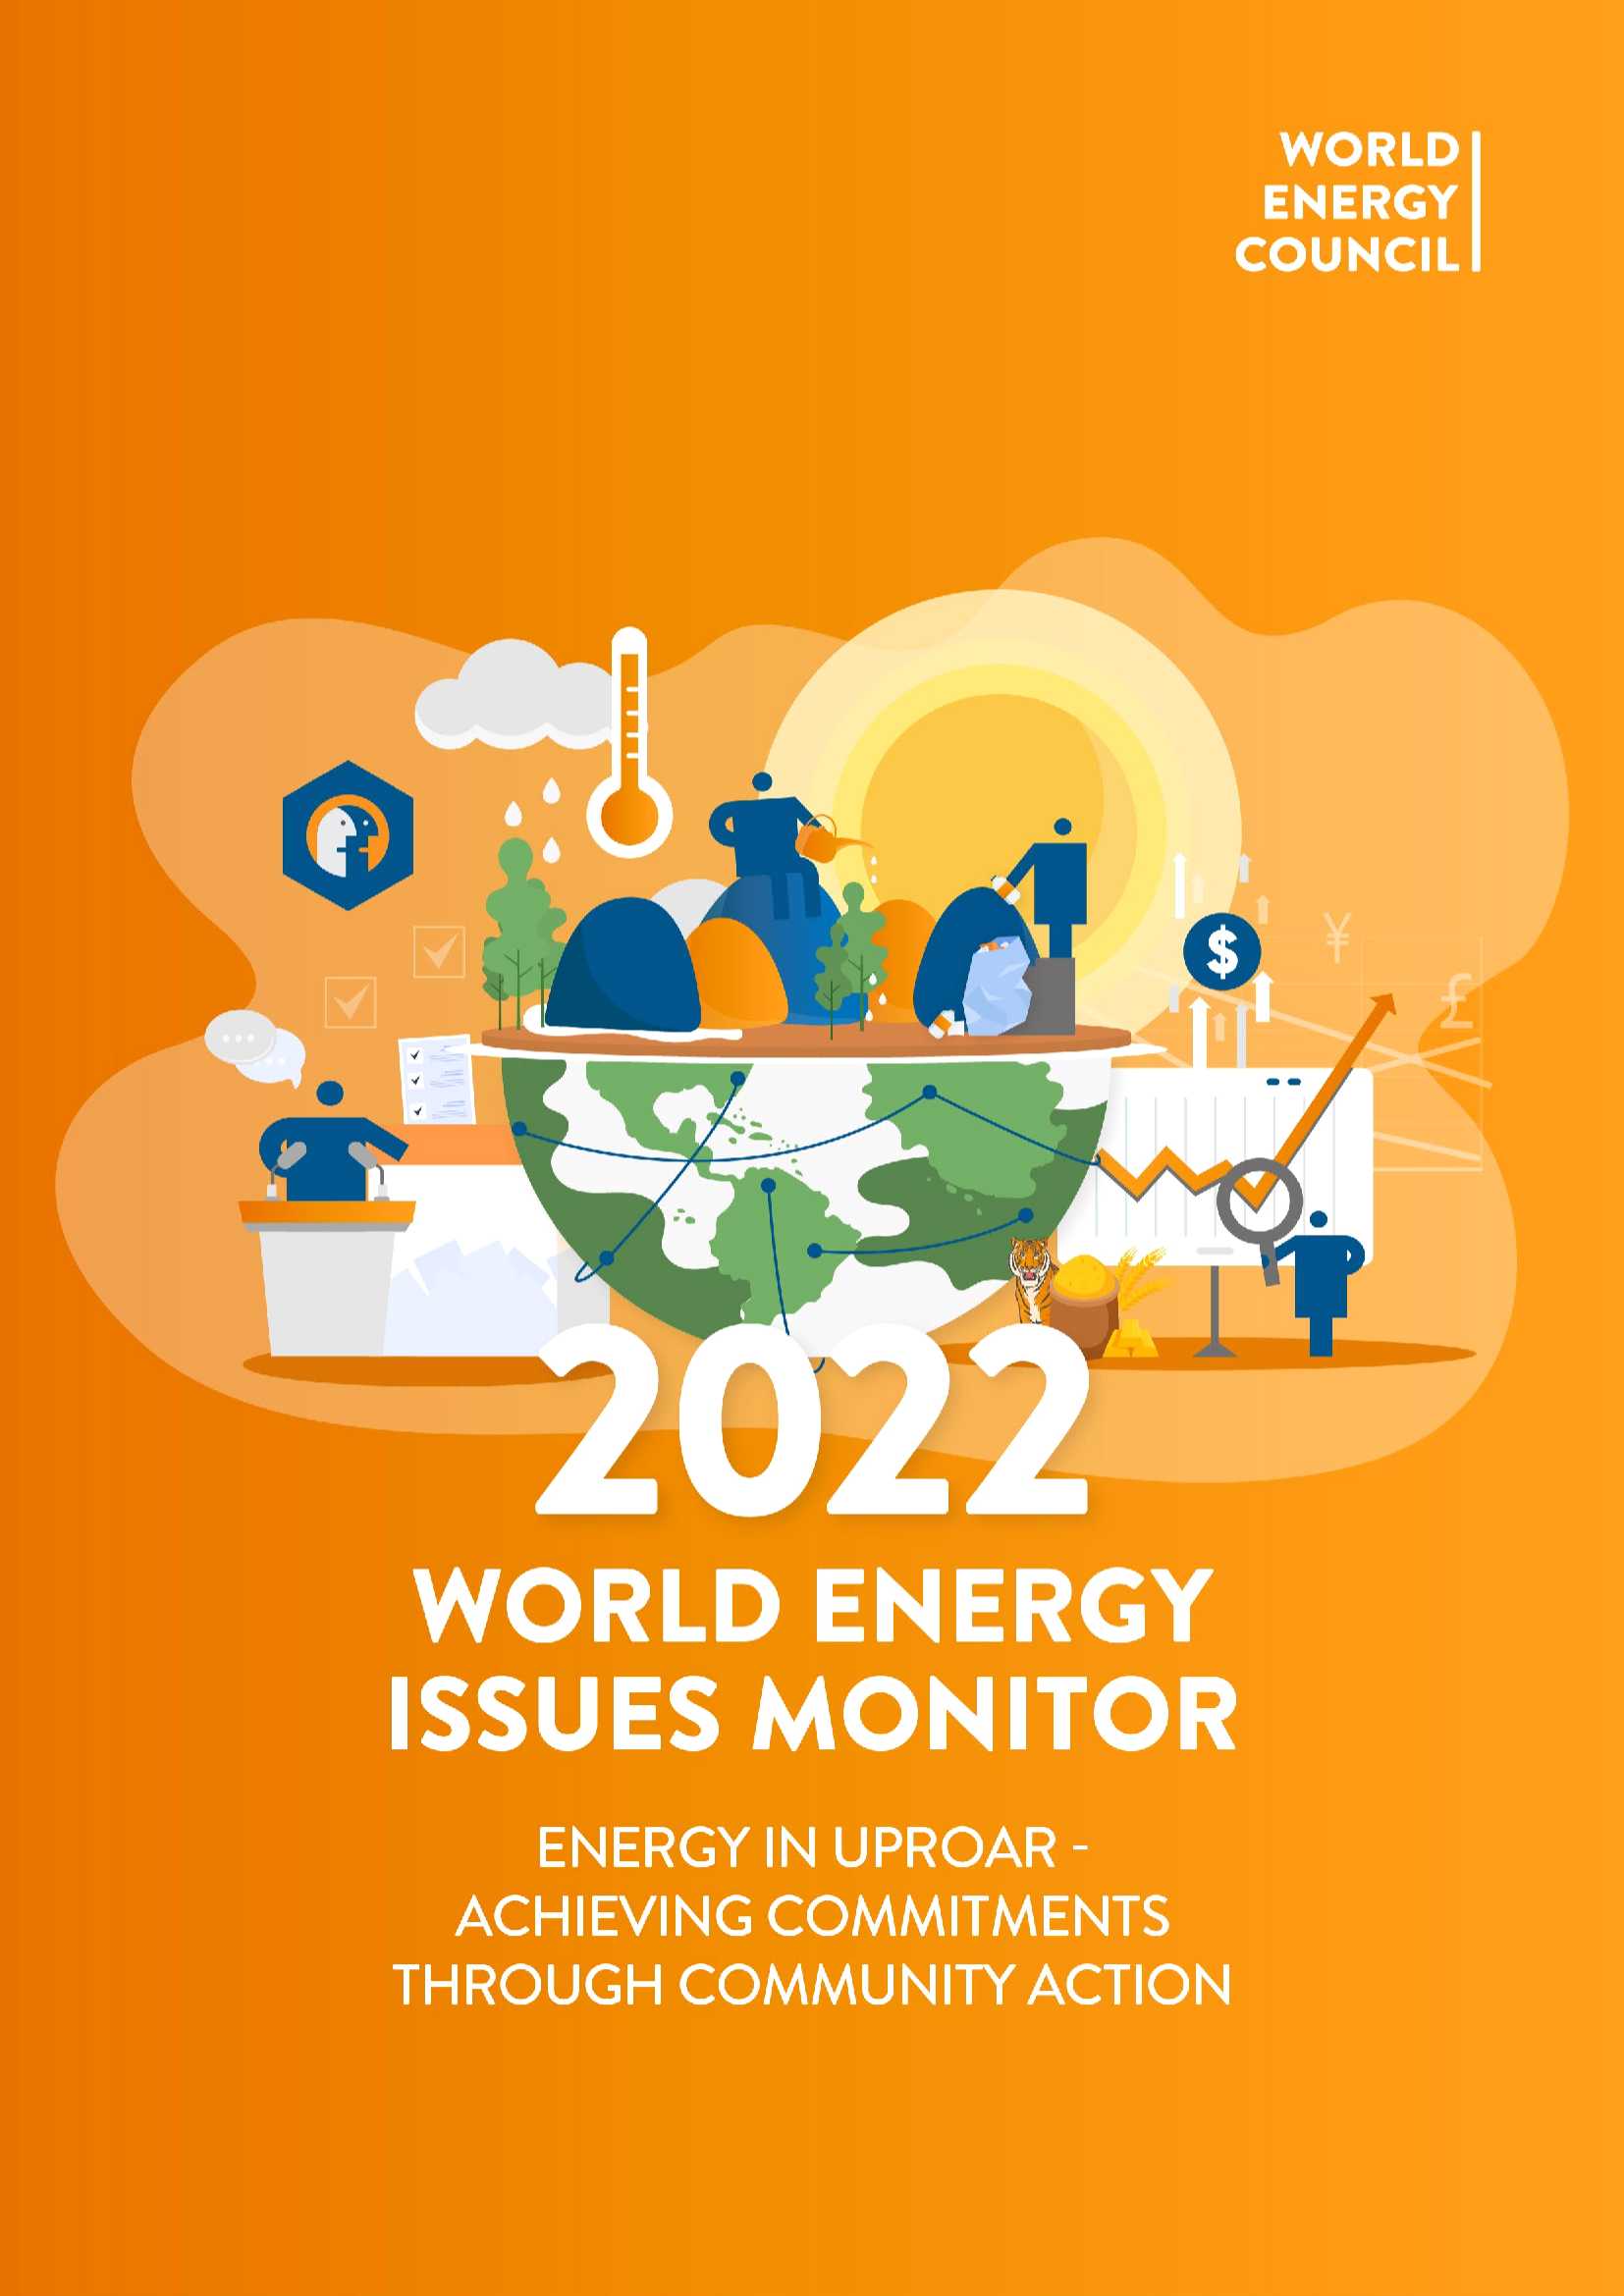 Lire la suite à propos de l’article World Energy Issues Monitor 2022